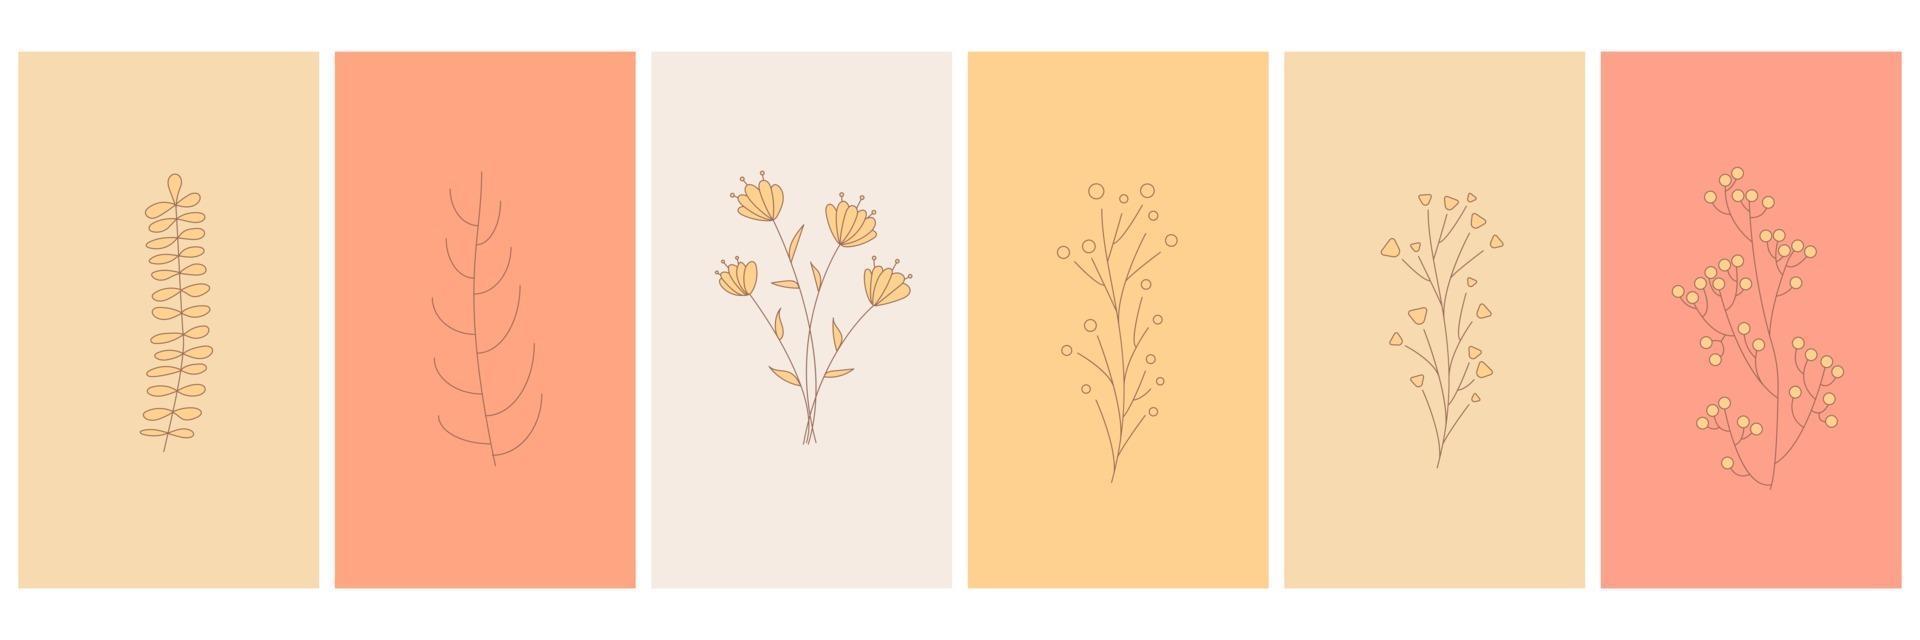 elementos abstractos minimalistas elementos florales simples hojas y flores vector